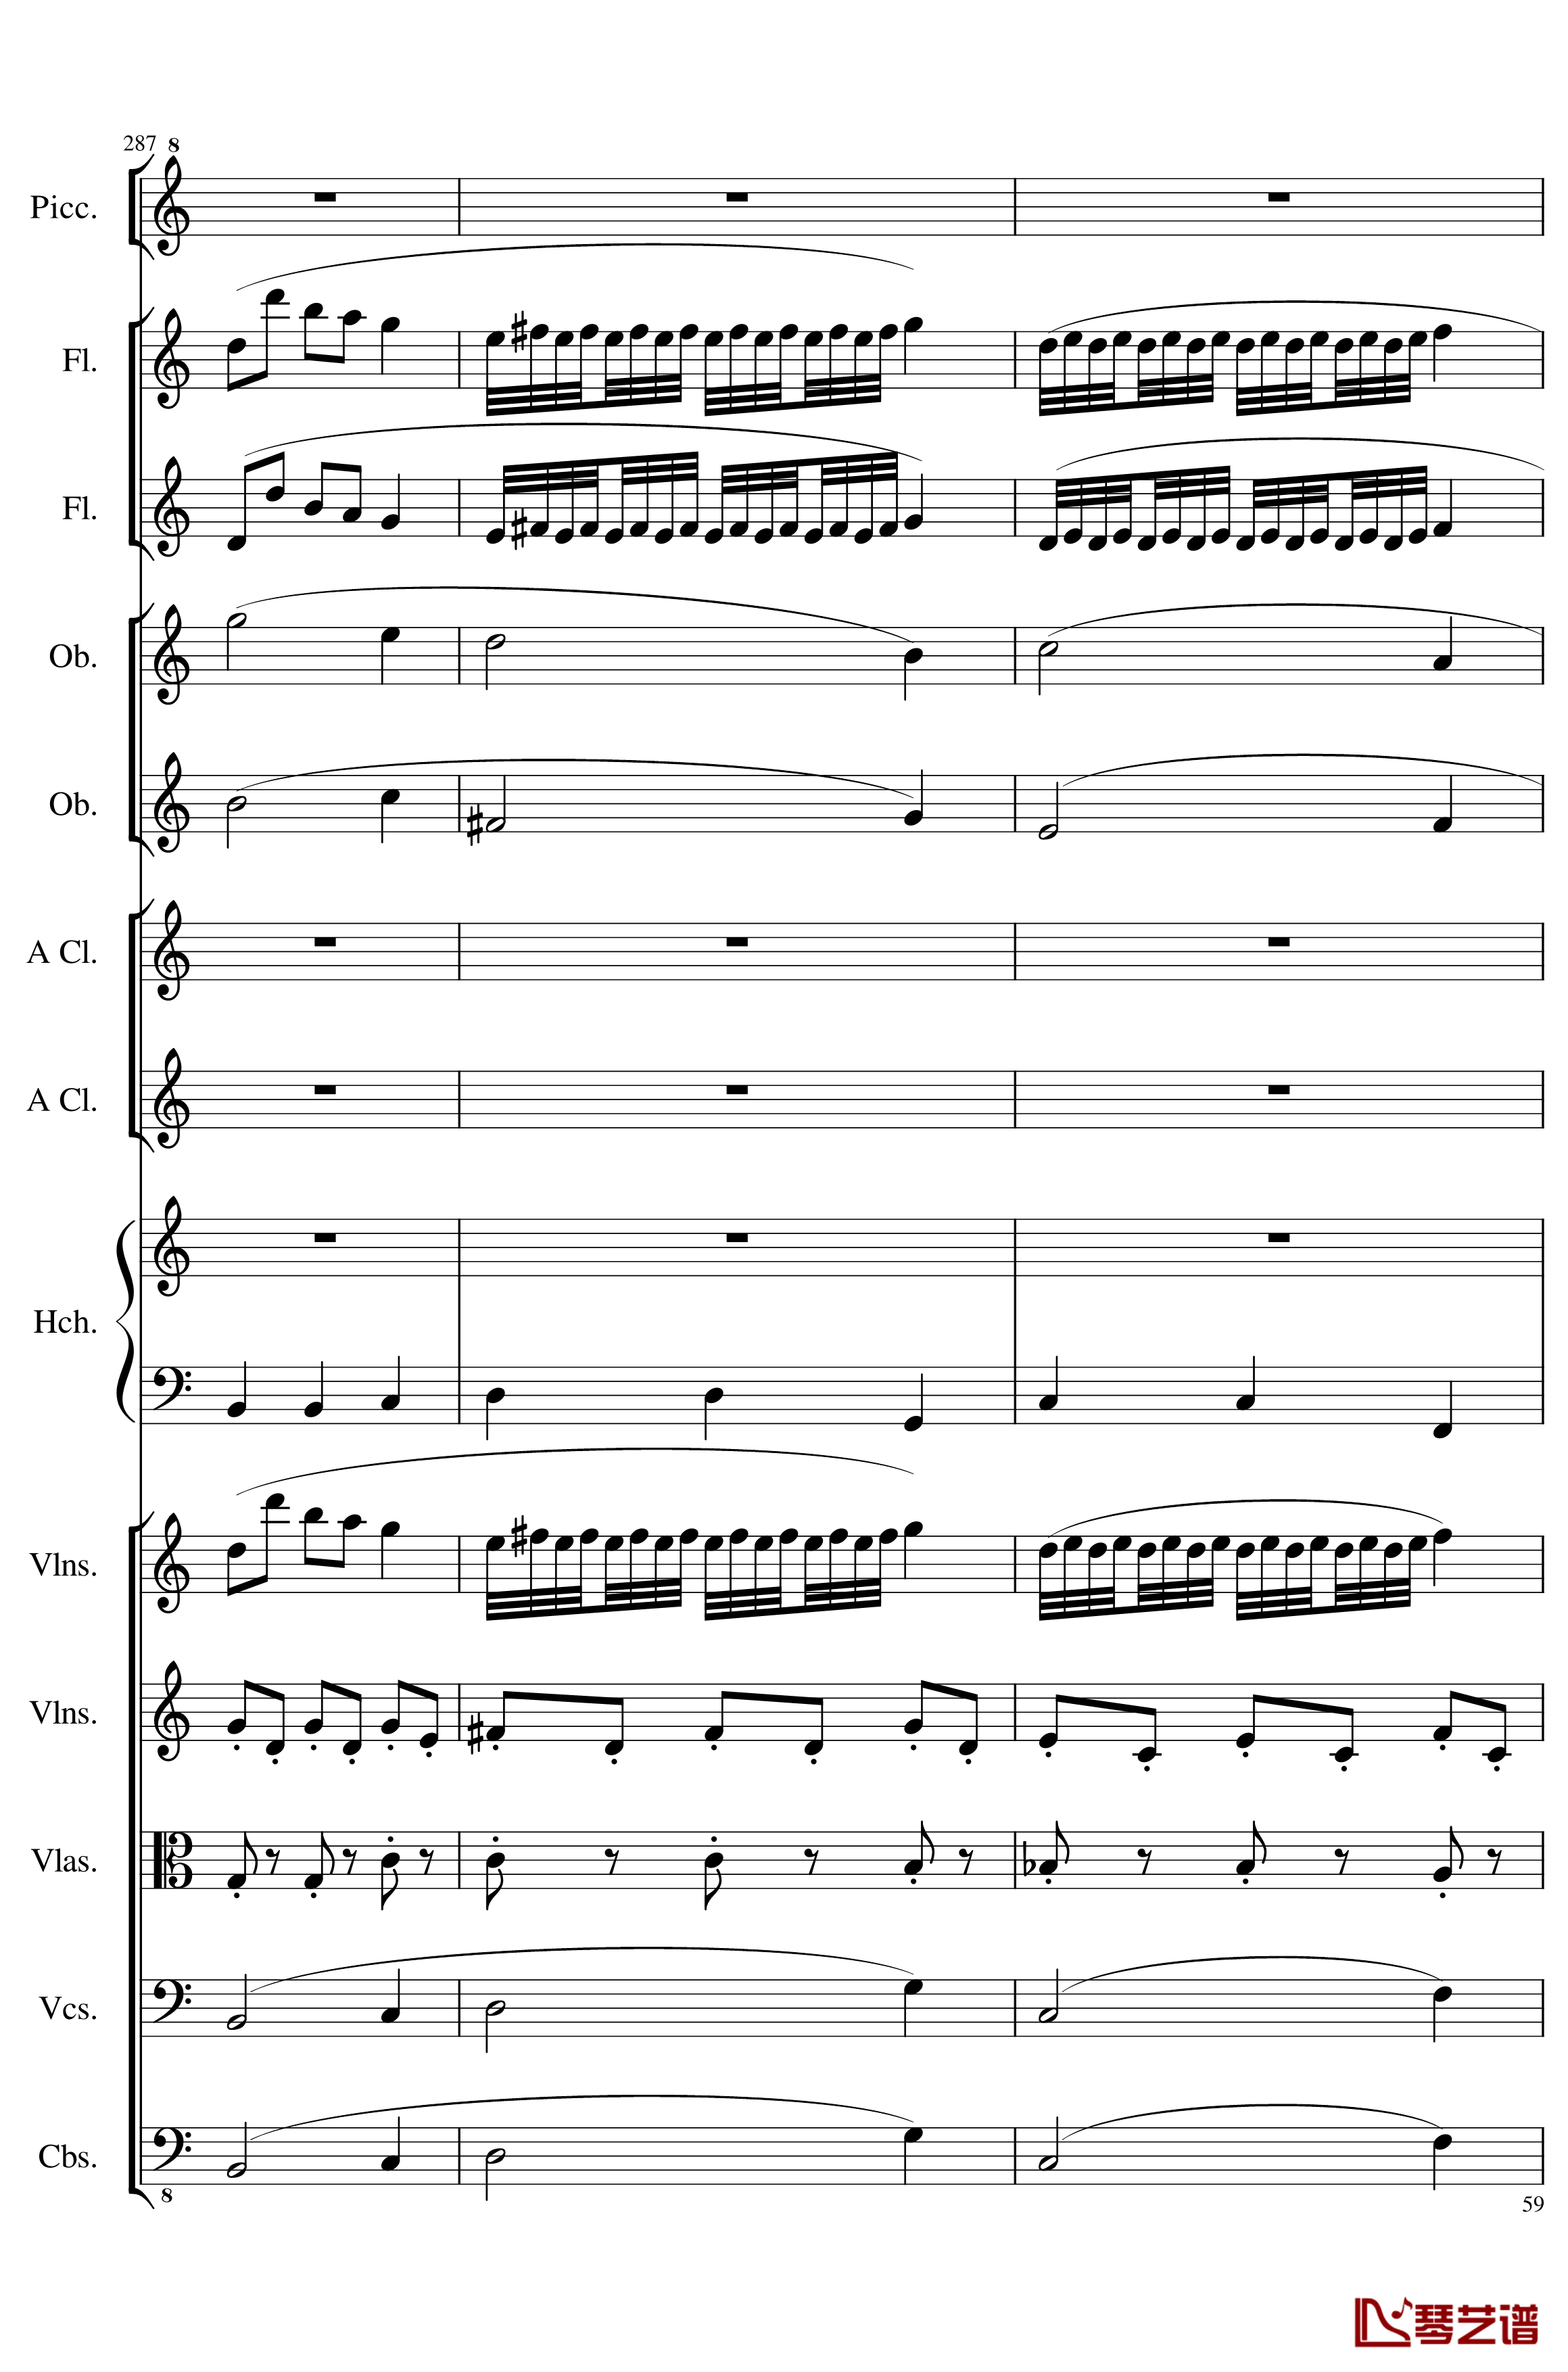 7 Contredanses No.1-7, Op.124钢琴谱-7首乡村舞曲，第一至第七，作品124-一个球59